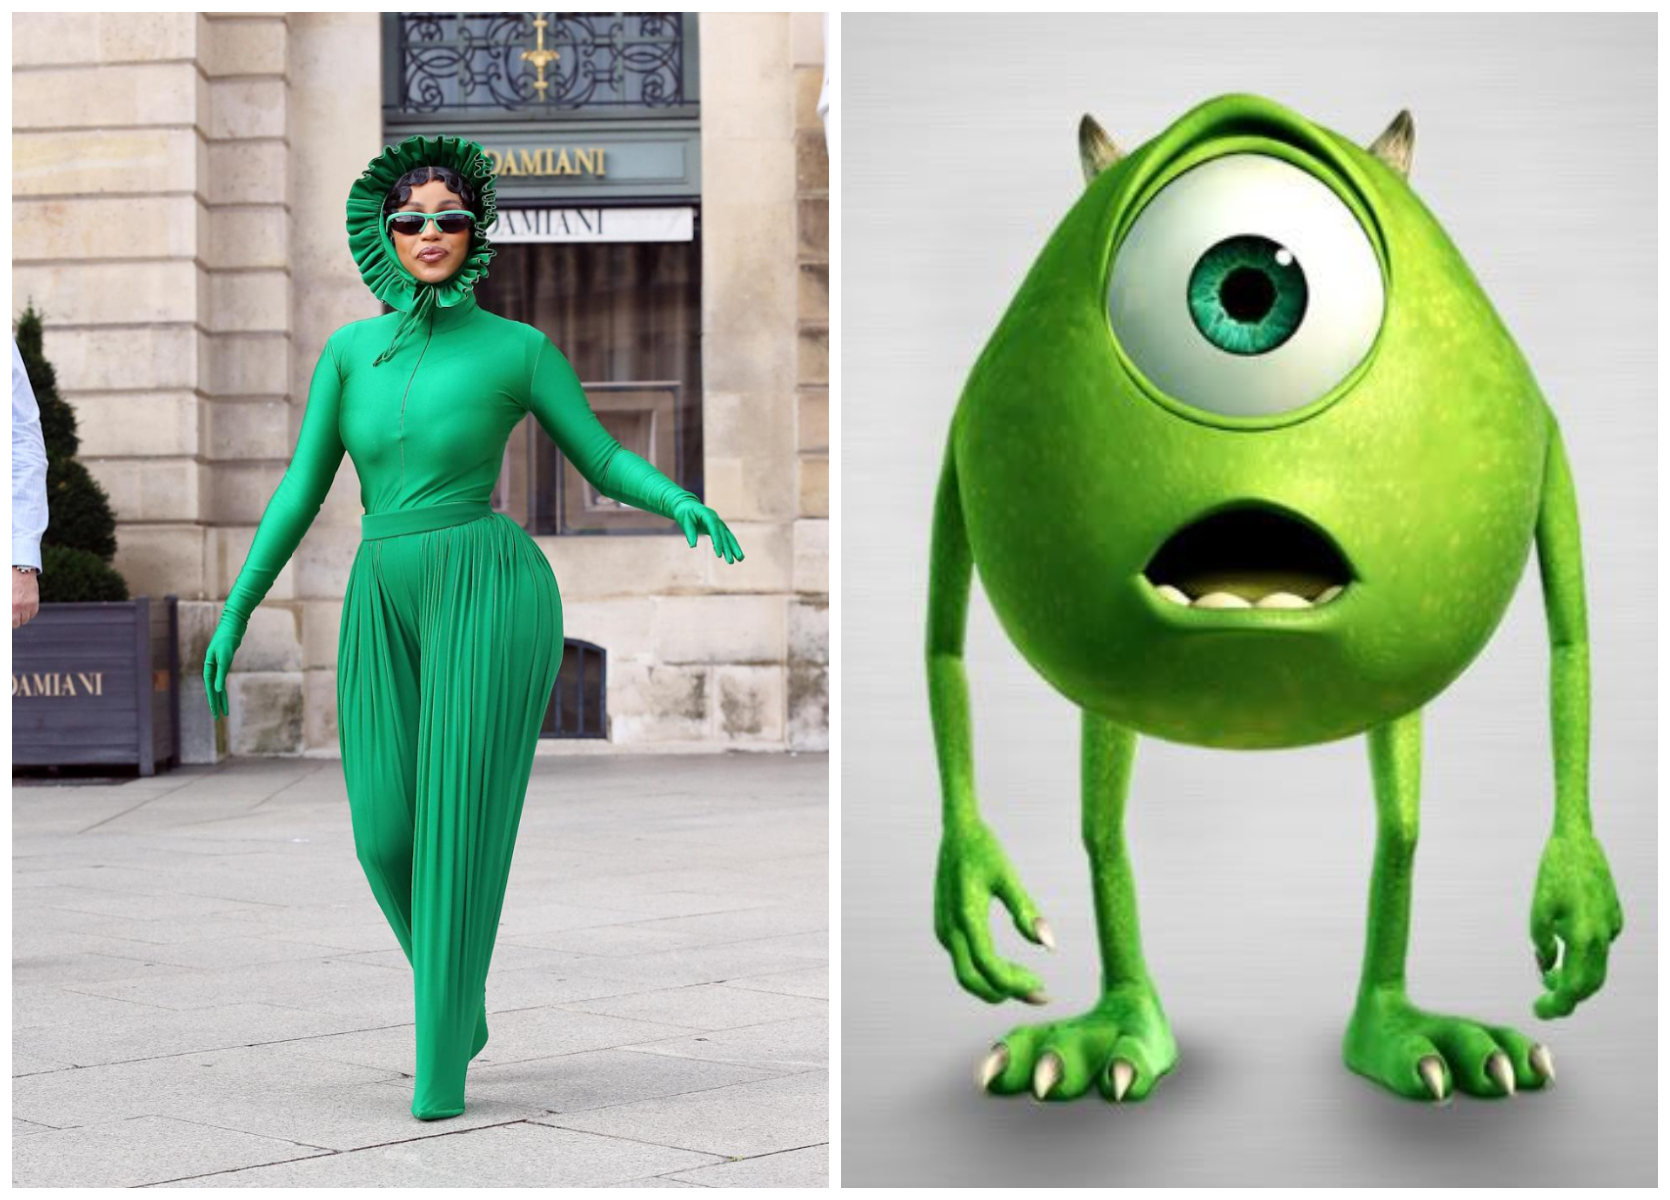 Meme this! Cardi B a purtat un outfit verde și a devenit ținta glumelor pe internet. Cu ce seamănă?